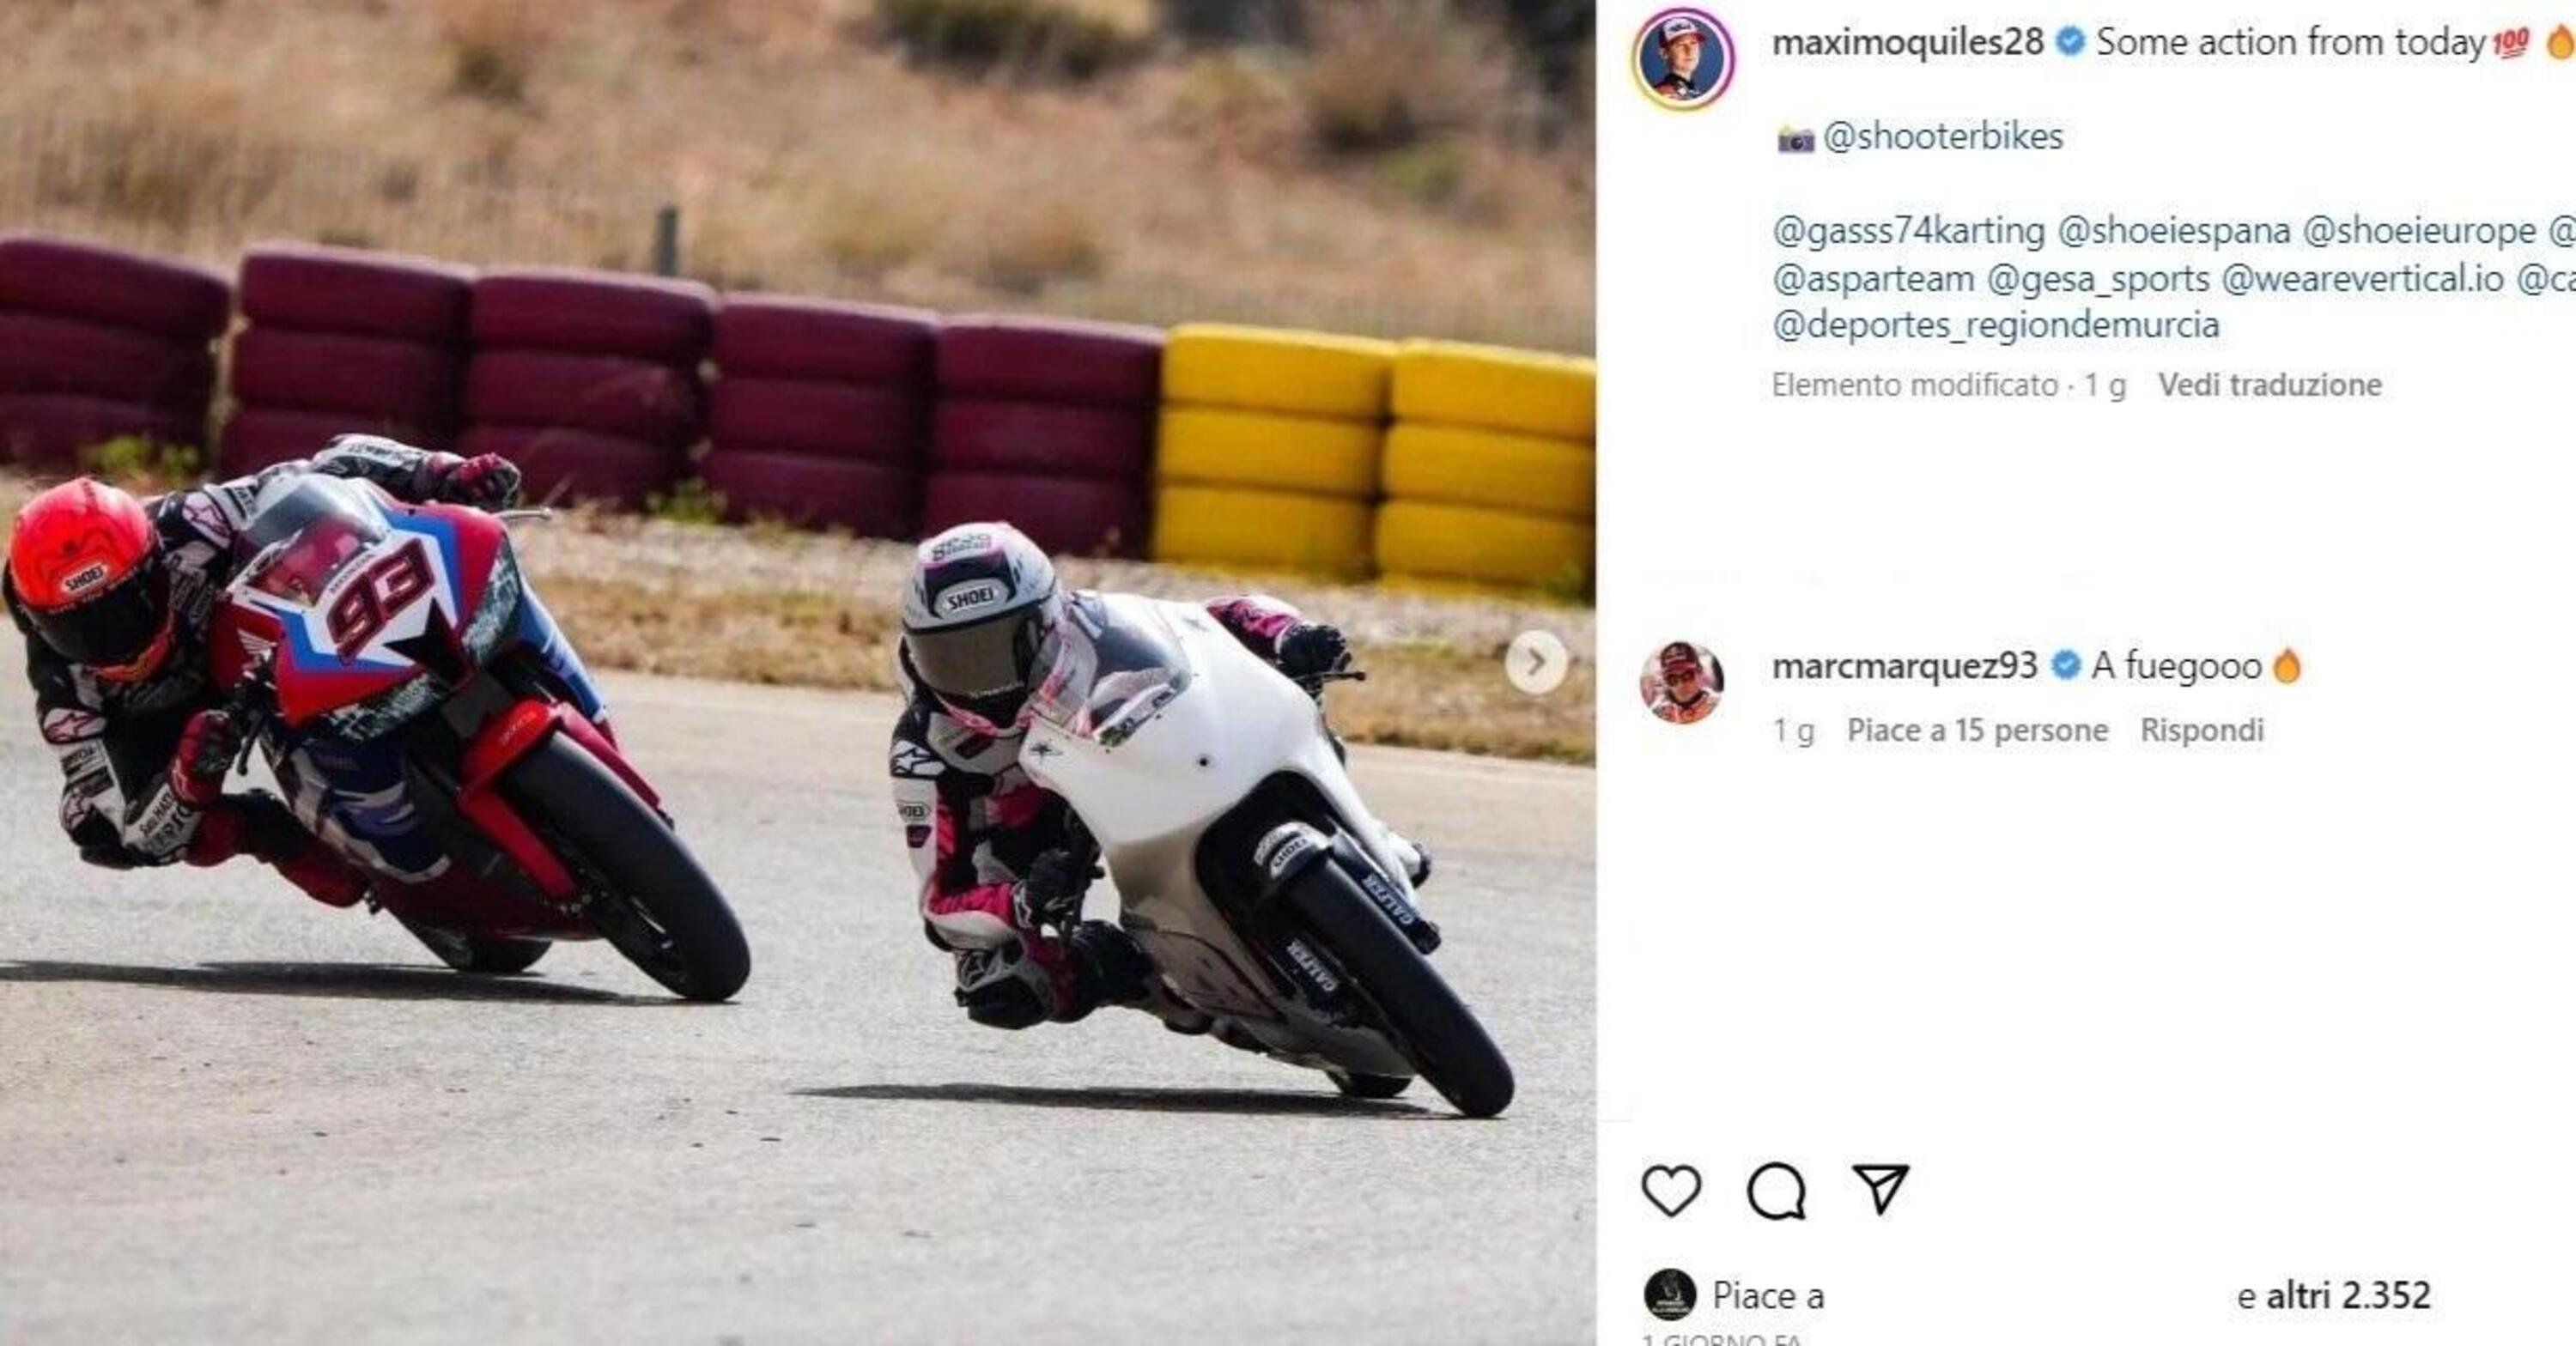 [VIDEO] MotoGP 2023. Marc Marquez si allena con un pilota giovanissimo, il 93 sta creando una sorta di Academy?